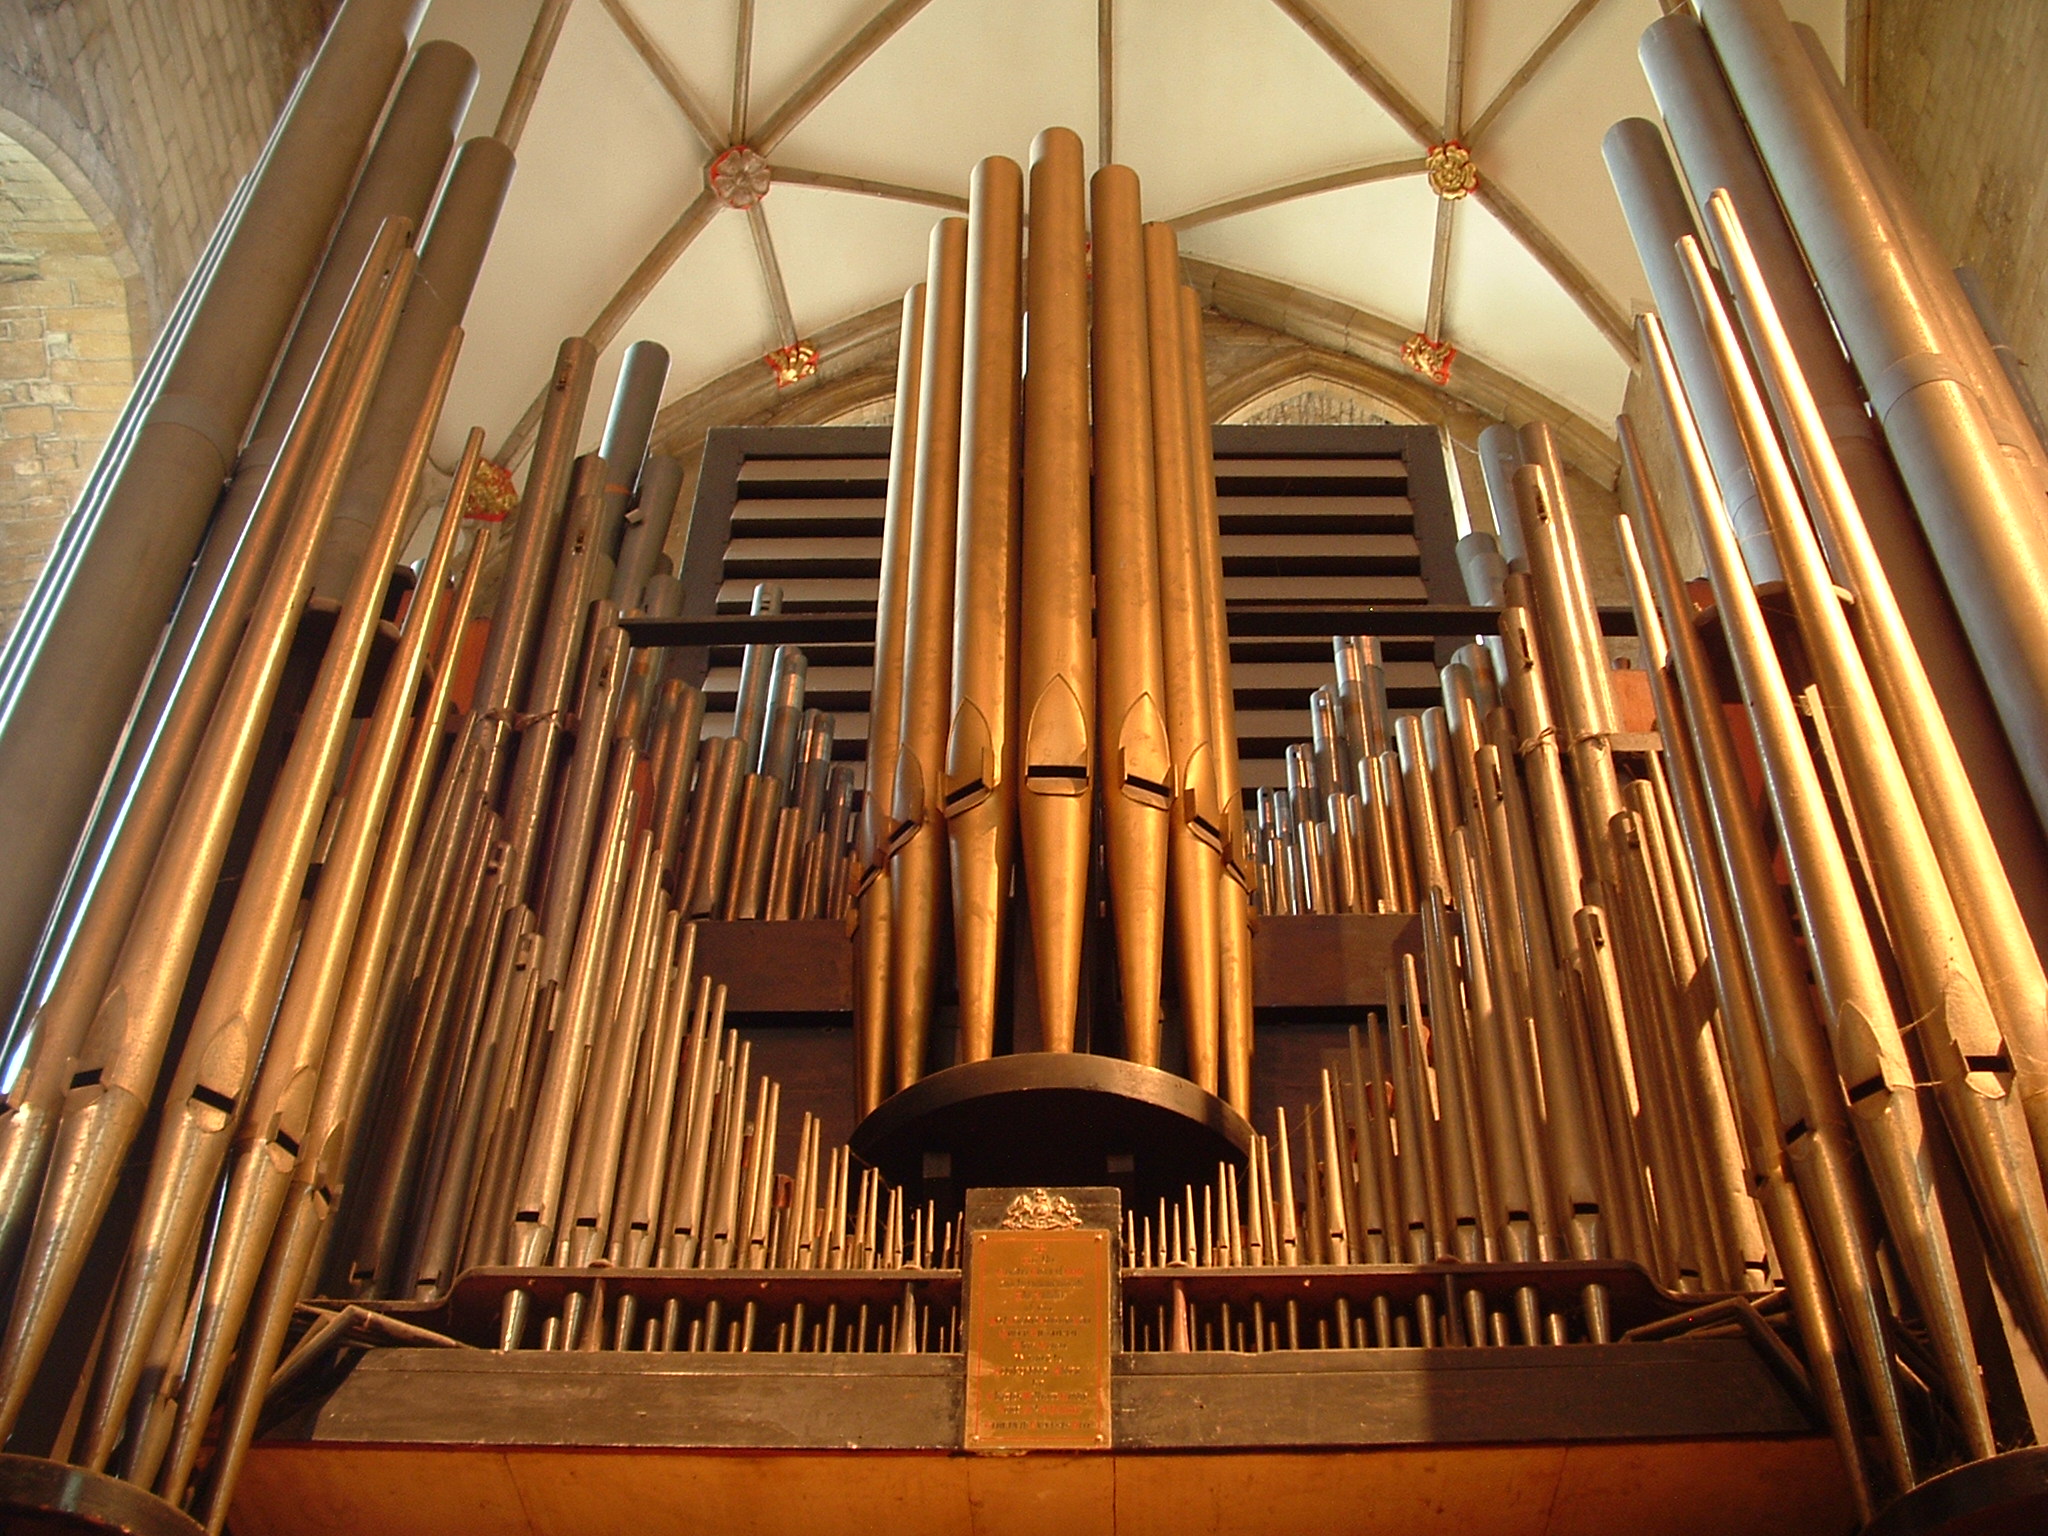 Сбор органа. Орган музыкальный инструмент. Трубки органа. Органы внутри. Устройство органа музыкального инструмента.